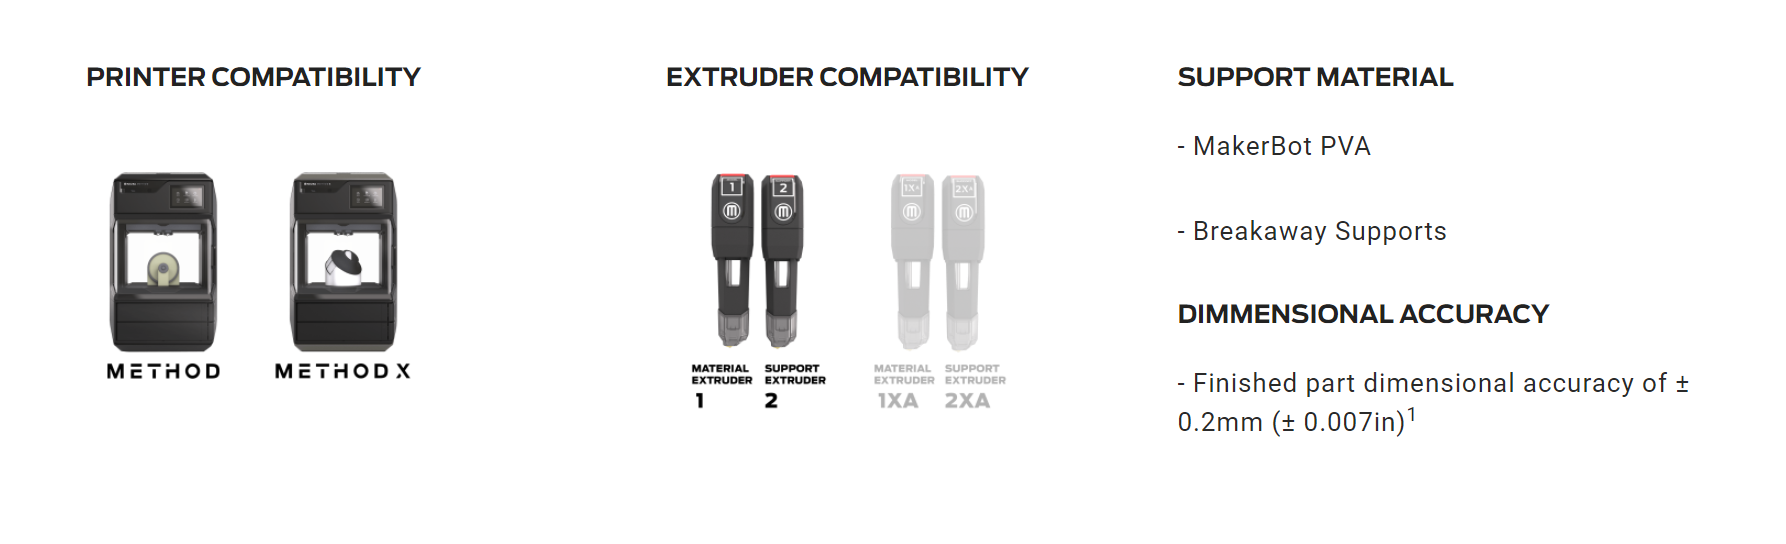 Printer Compatibility